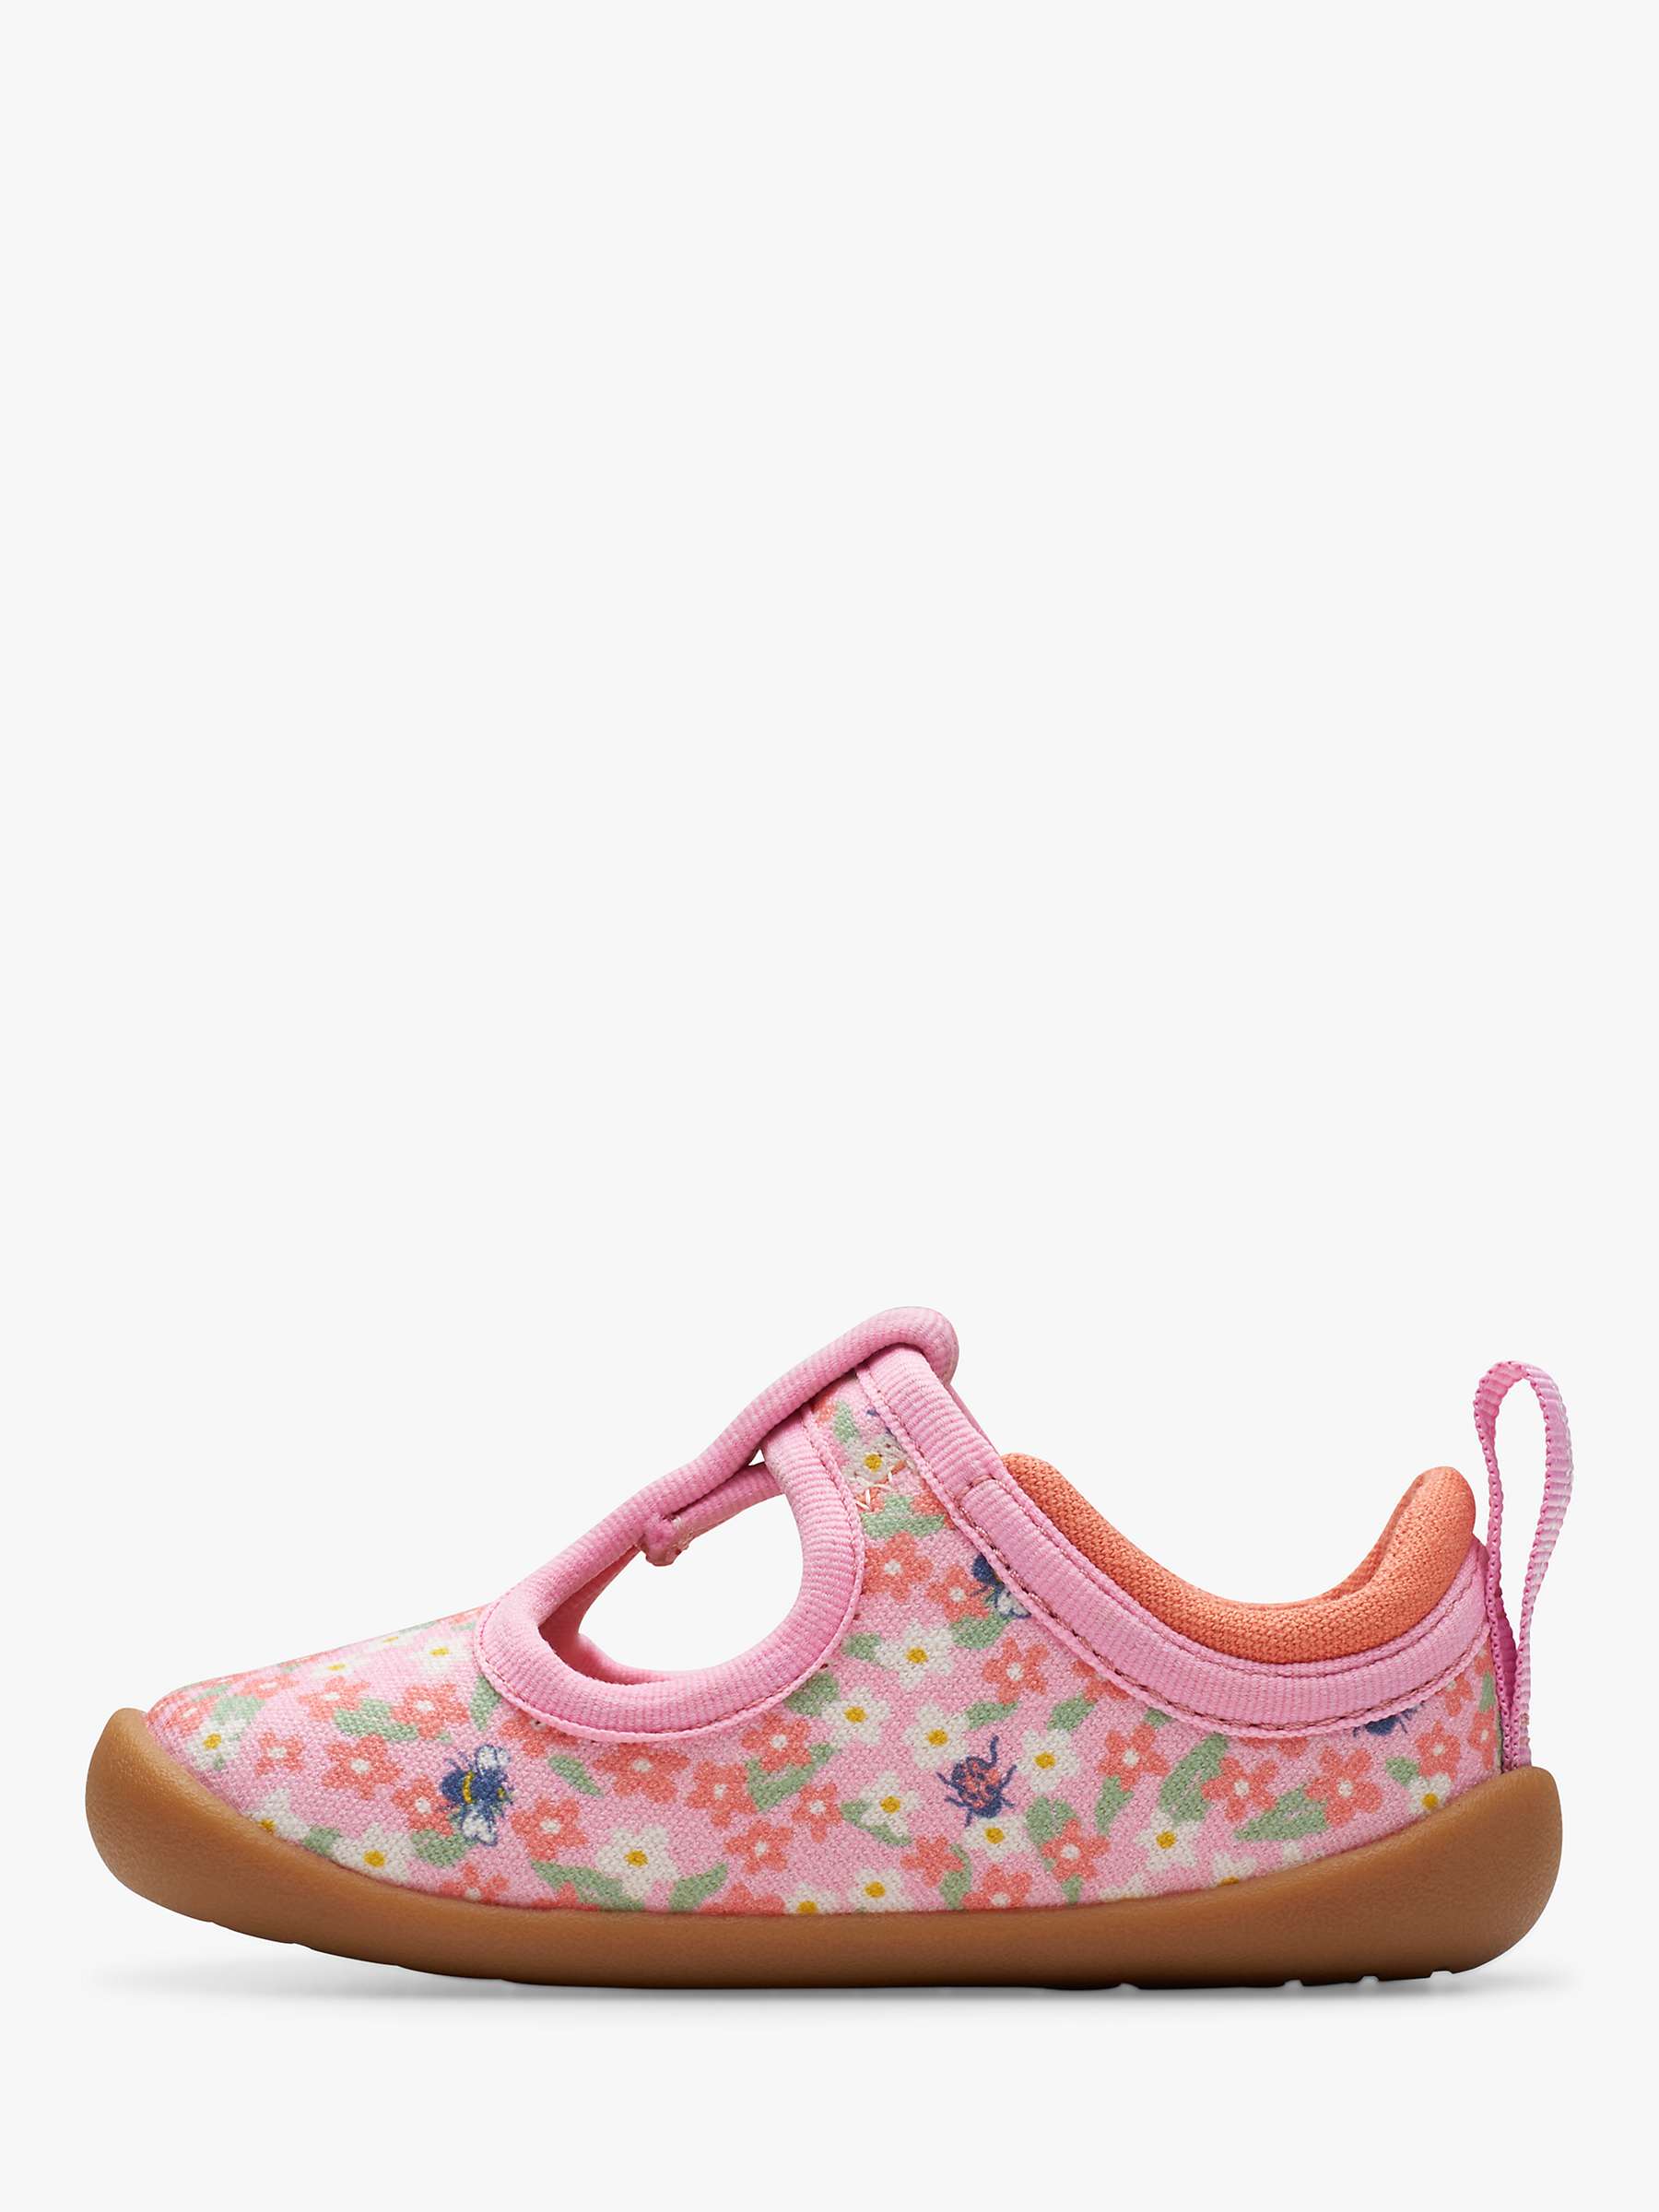 Buy Clarks Baby Roamer Bloom Floral Print T-Bar Shoes, Pink Online at johnlewis.com